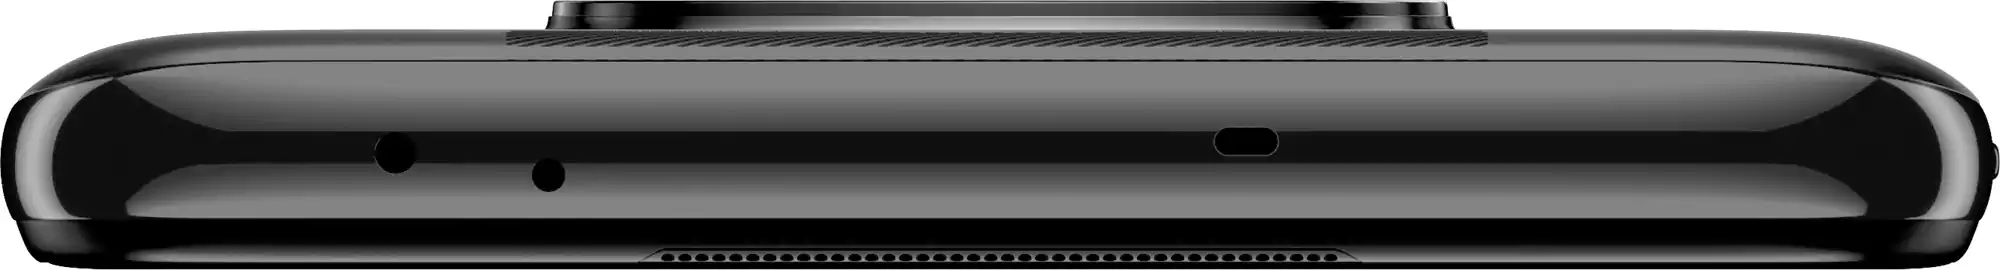 موبايل شاومي بوكو X3 إن إف سي، ثنائي الشريحة، ذاكرة داخلية 128 جيجابايت، رامات 6 جيجابايت، شبكة الجيل الرابع إل تي إي، رمادي